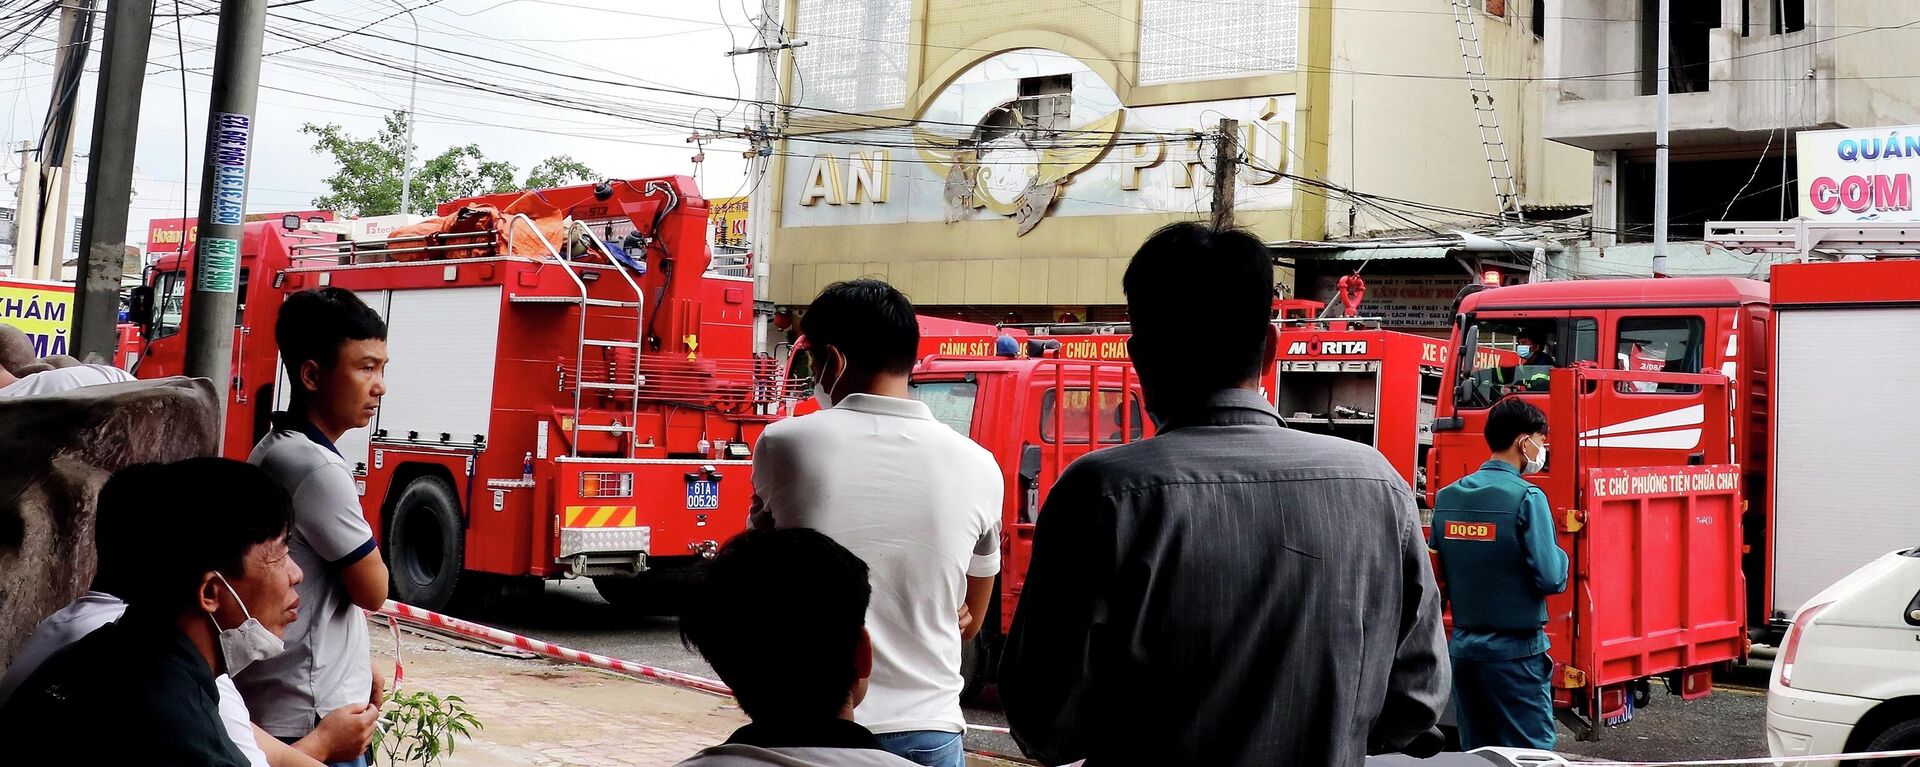 Lính cứu hỏa tại hiện trường vụ hỏa hoạn thiêu rụi quán karaoke ở tỉnh Bình Dương, phía bắc TP. Hồ Chí Minh. - Sputnik Việt Nam, 1920, 11.09.2022